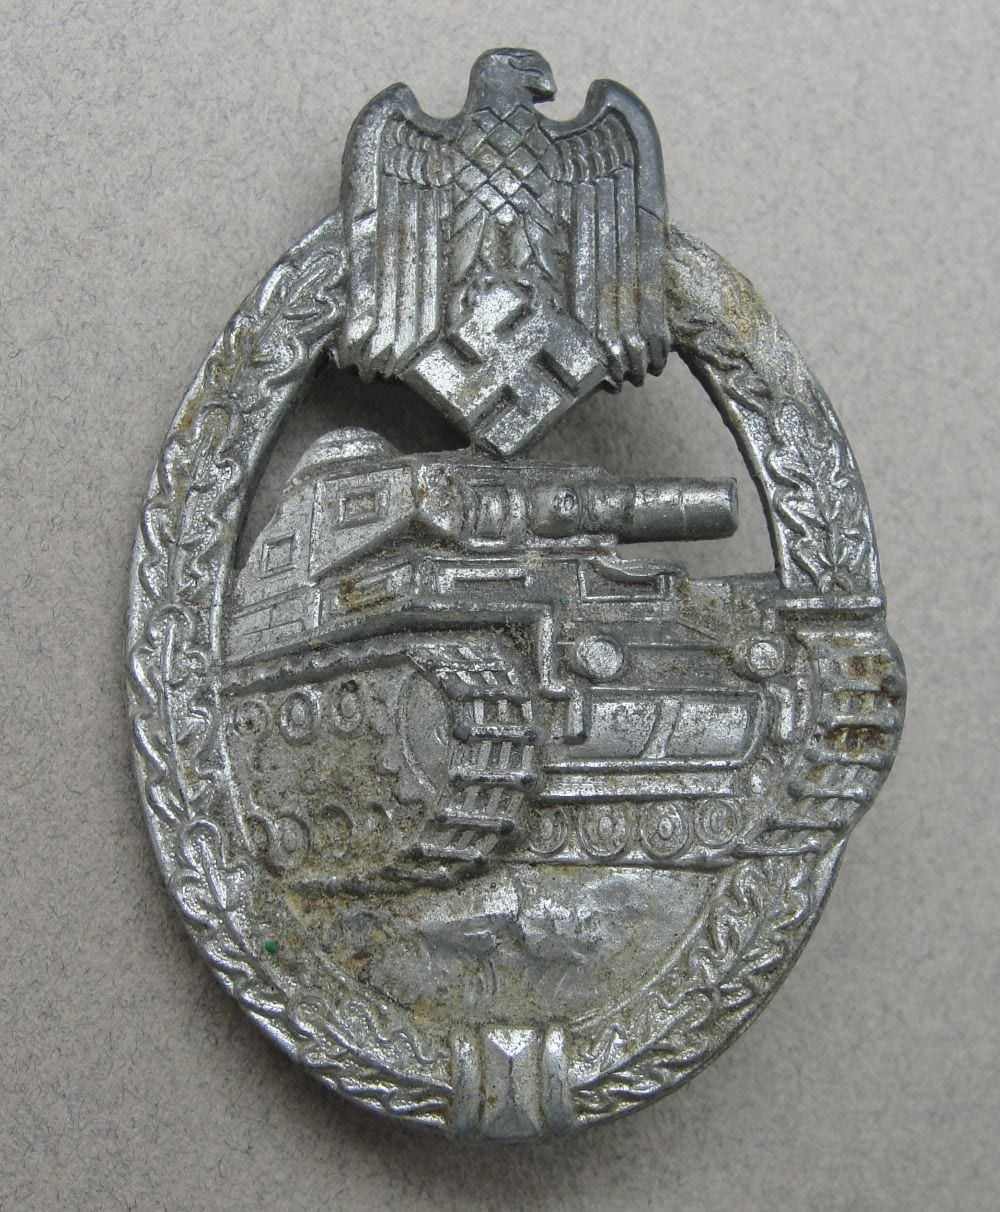 Army/Waffen-SS Panzer Assault Badge, Silver Grade, Flatback Version